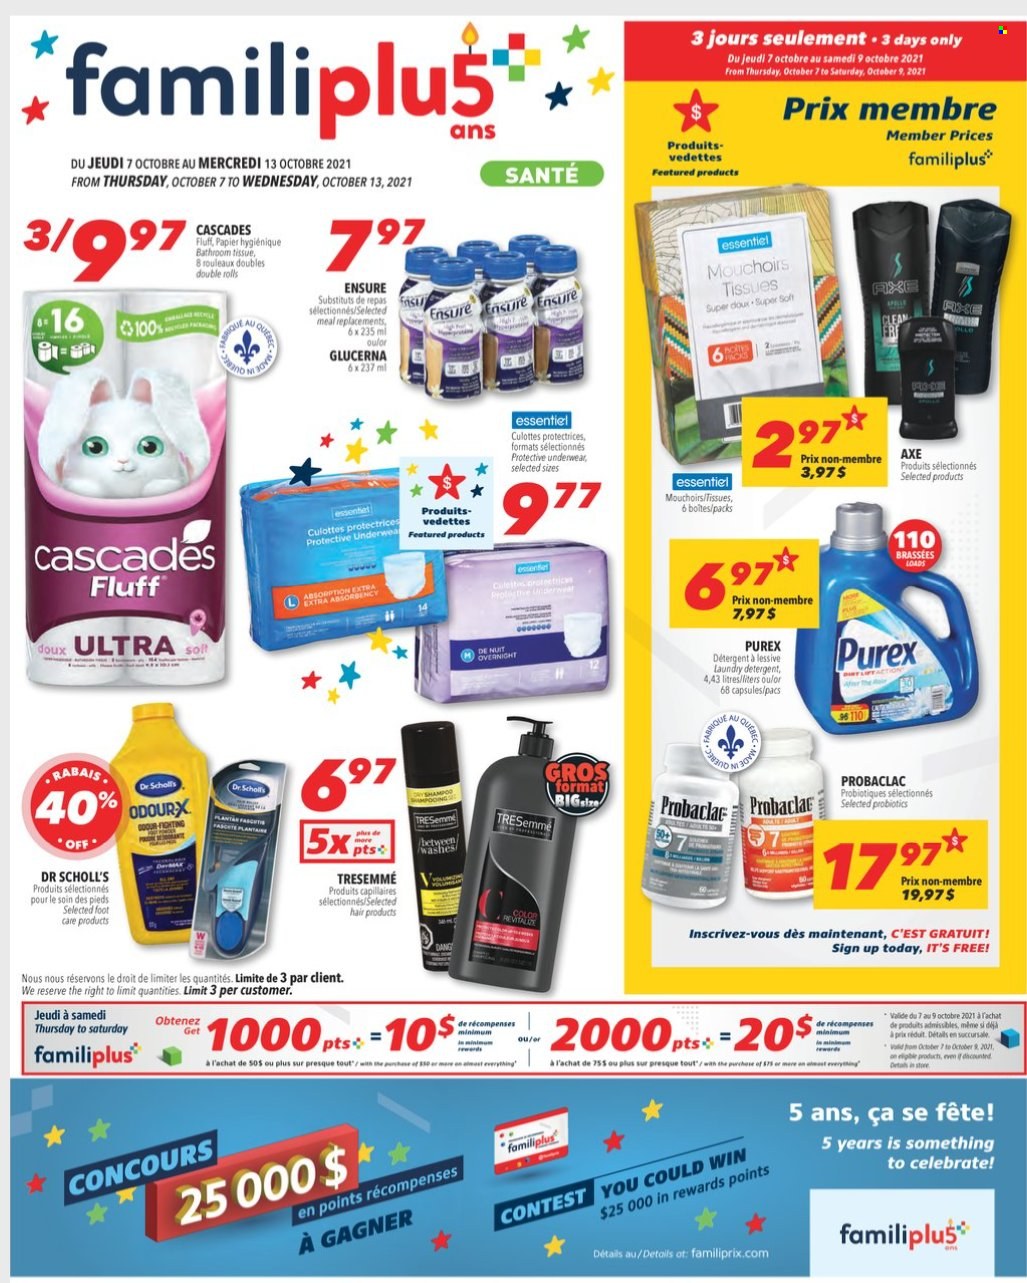 thumbnail - Familiprix Santé Flyer - October 07, 2021 - October 13, 2021 - Sales products - bath tissue, laundry detergent, Purex, TRESemmé, foot care, probiotics, Glucerna, Dr. Scholl's, Sol, detergent. Page 1.